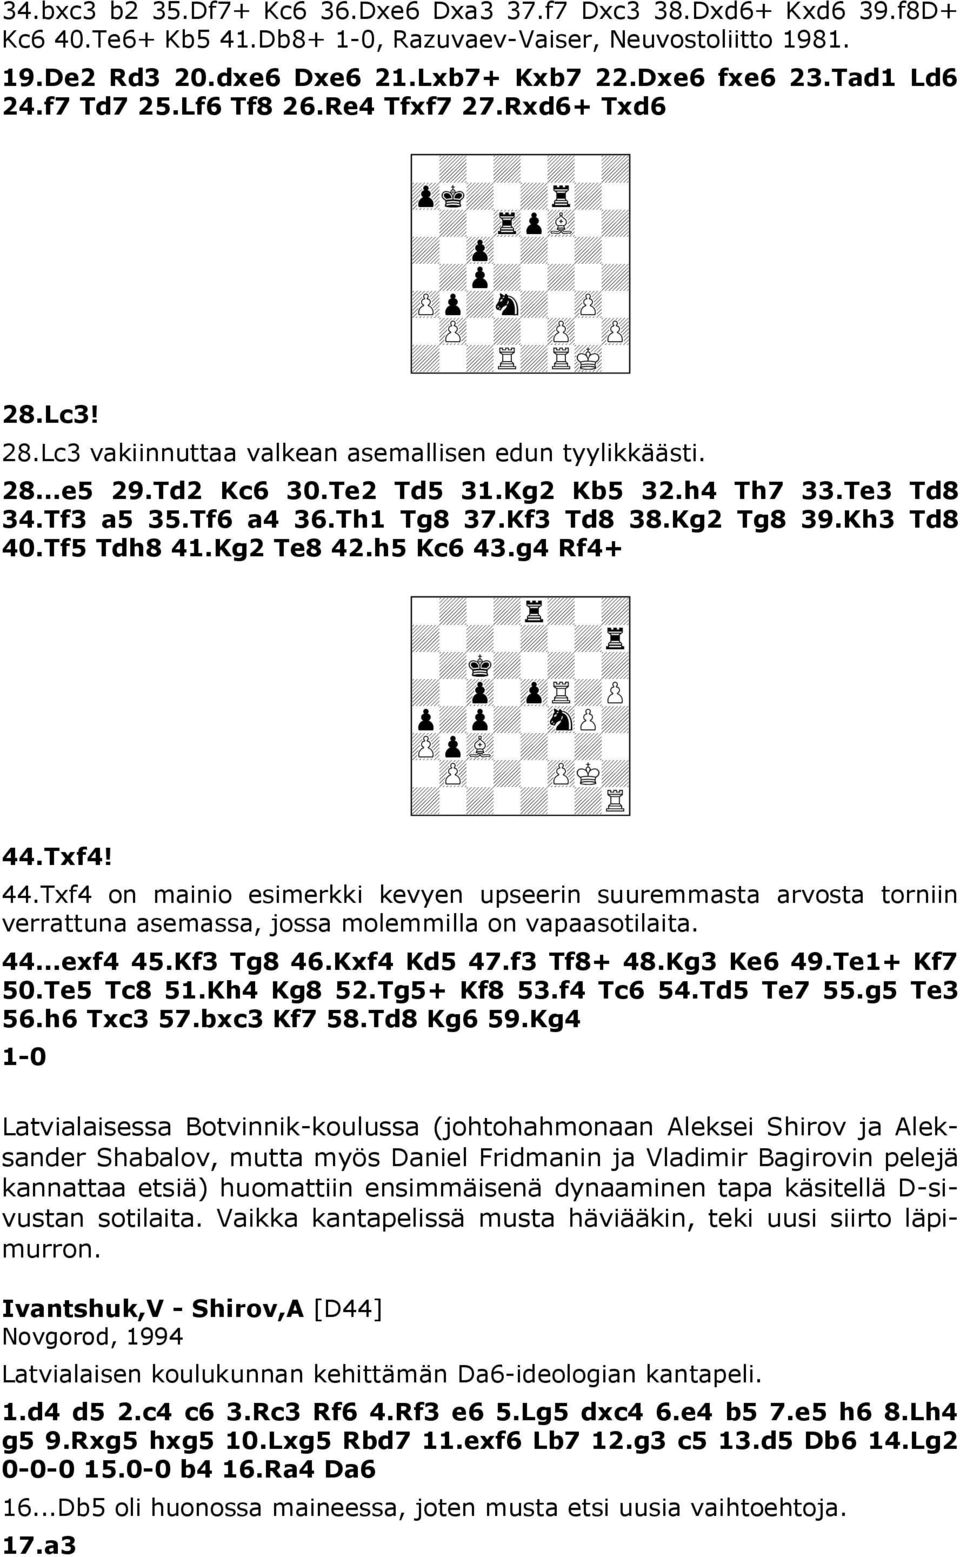 Lc3 vakiinnuttaa valkean asemallisen edun tyylikkäästi. 28...e5 29.Td2 Kc6 30.Te2 Td5 31.Kg2 Kb5 32.h4 Th7 33.Te3 Td8 34.Tf3 a5 35.Tf6 a4 36.Th1 Tg8 37.Kf3 Td8 38.Kg2 Tg8 39.Kh3 Td8 40.Tf5 Tdh8 41.